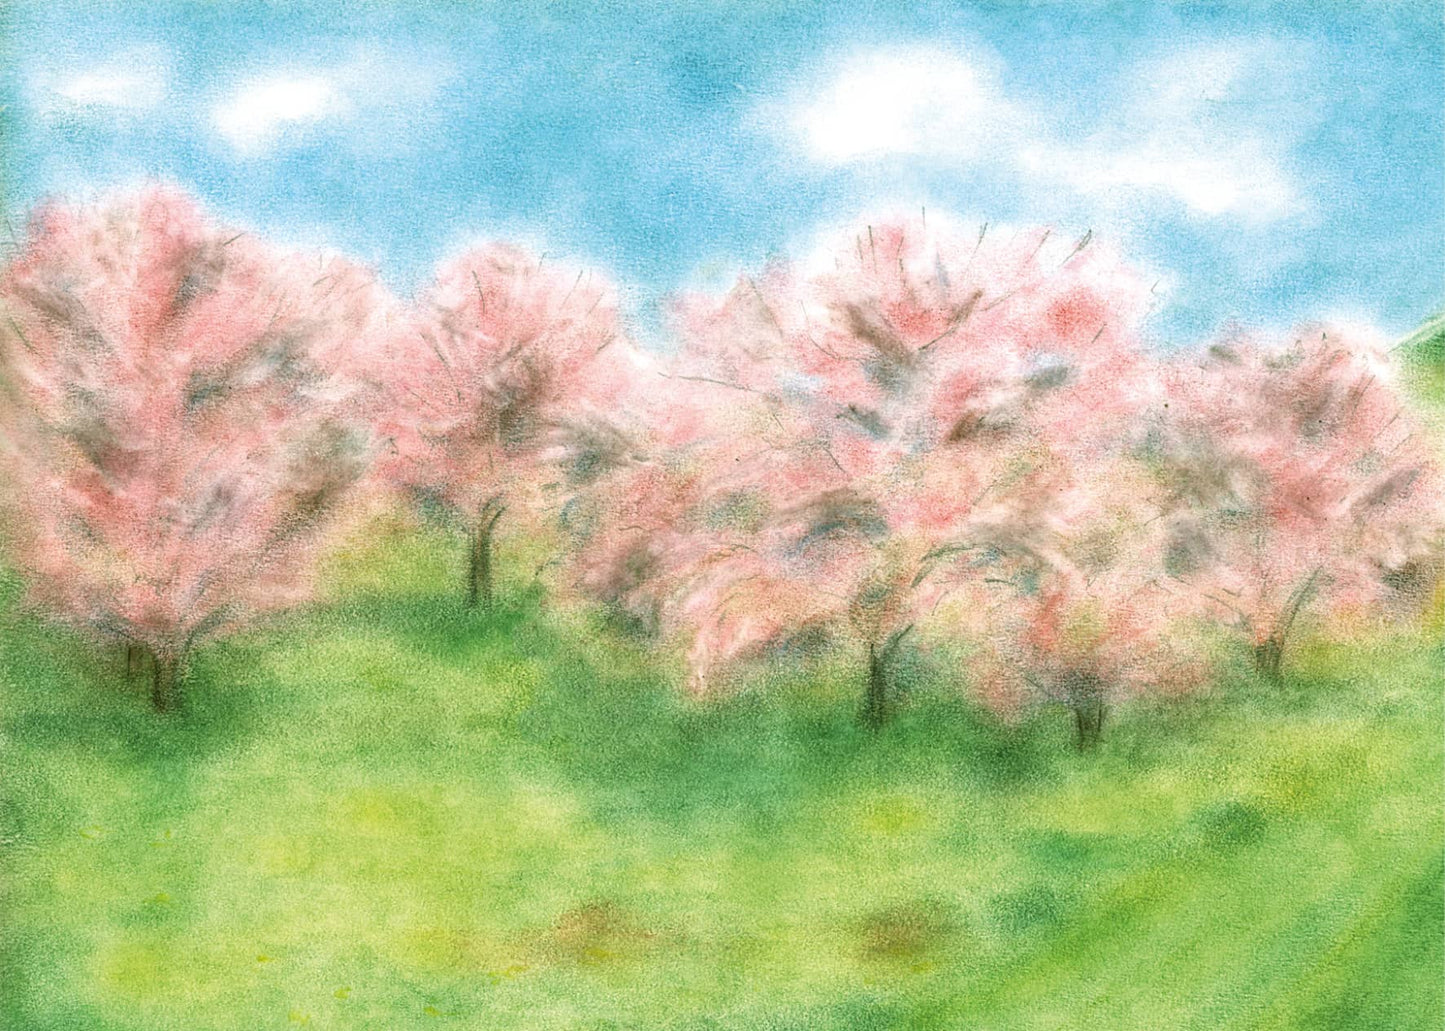 Seccorell Postkarte "Baumblüten", mit blühenden Bäumen auf grüner Wiese unter blauem Himmel, ideal für frühlingshafte Grüße. 